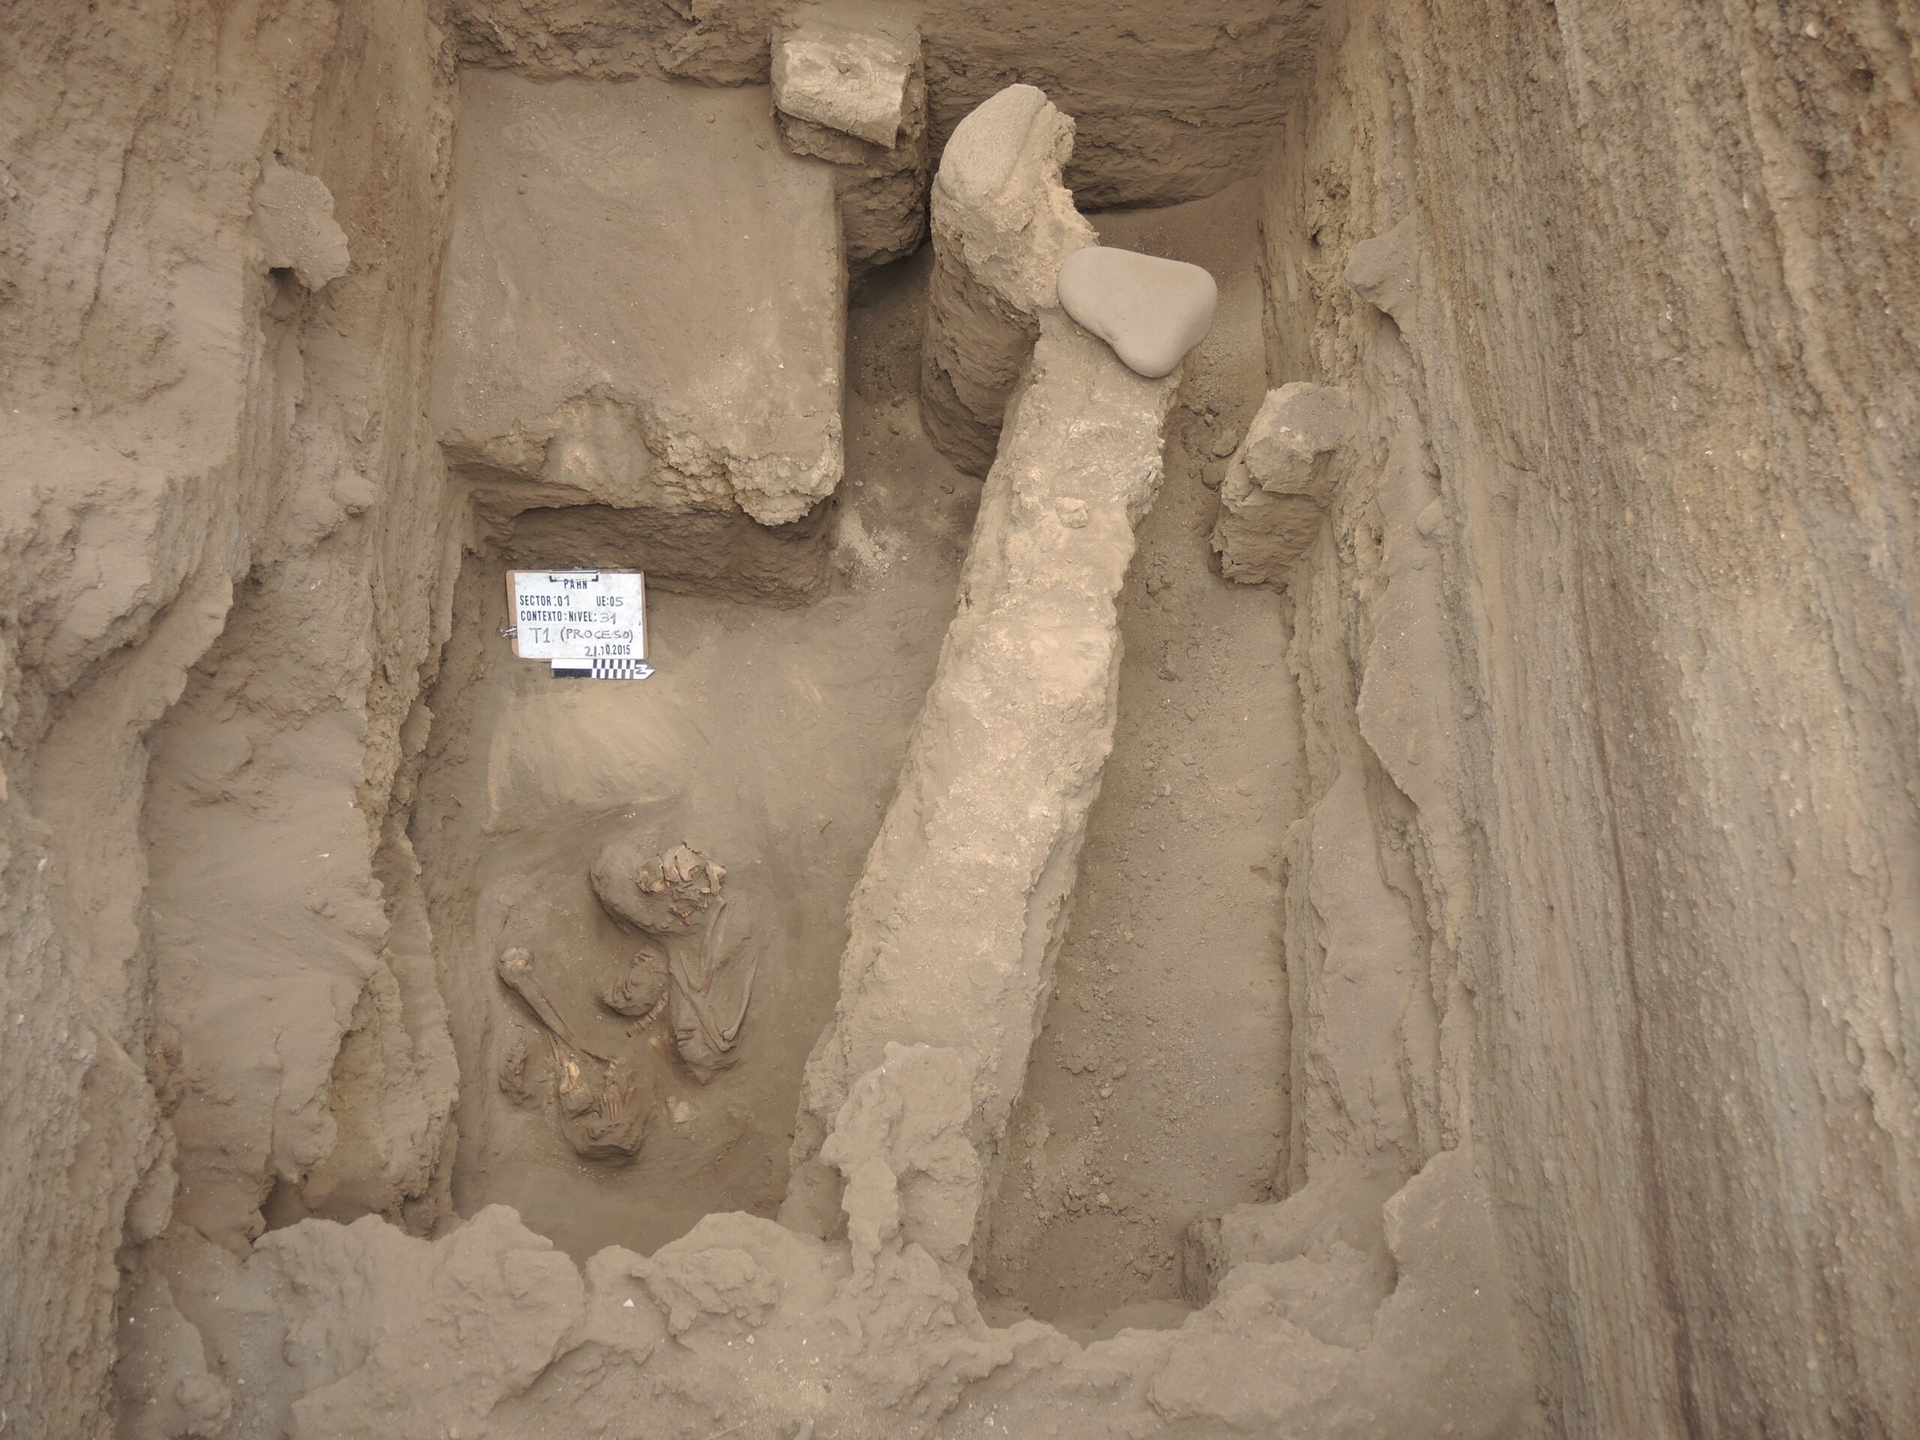 第三居住階段（聚落展開公共建築計畫）地層中，發現一具女性骸骨（左下）、殘存的公共建築泥磚牆基。為了方便發掘人骨，上方的牆基、火煻、石頭已先移除。 圖｜陳珮瑜 